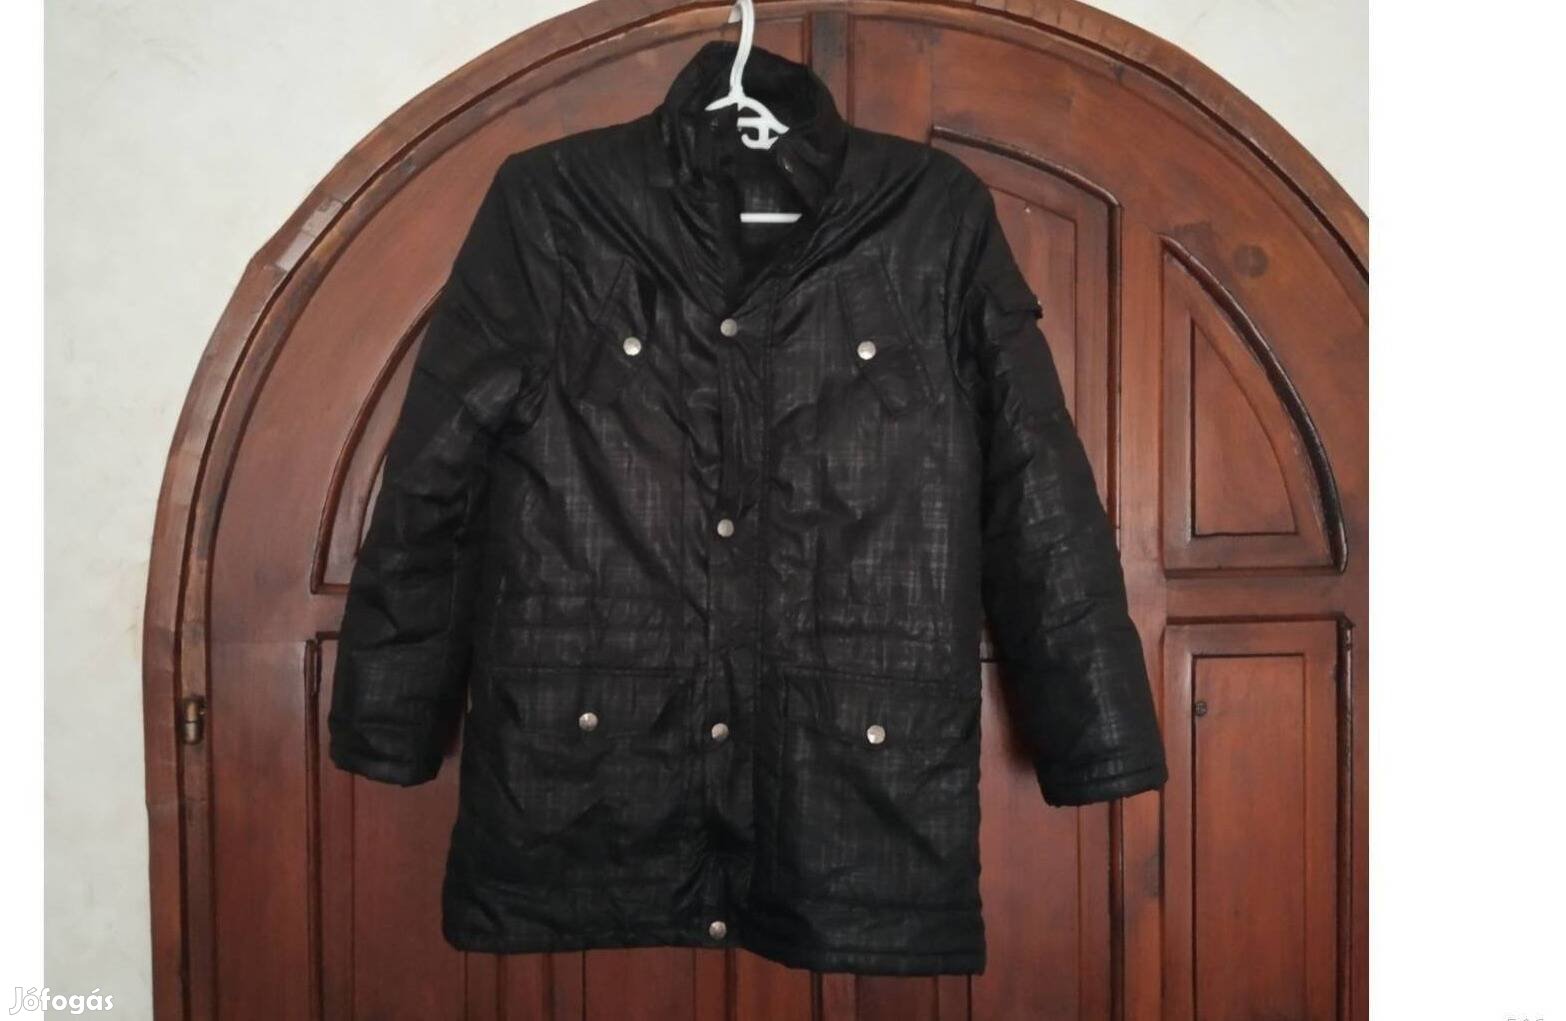 Fekete női tavaszi dzseki S méret, Okay 164 márka